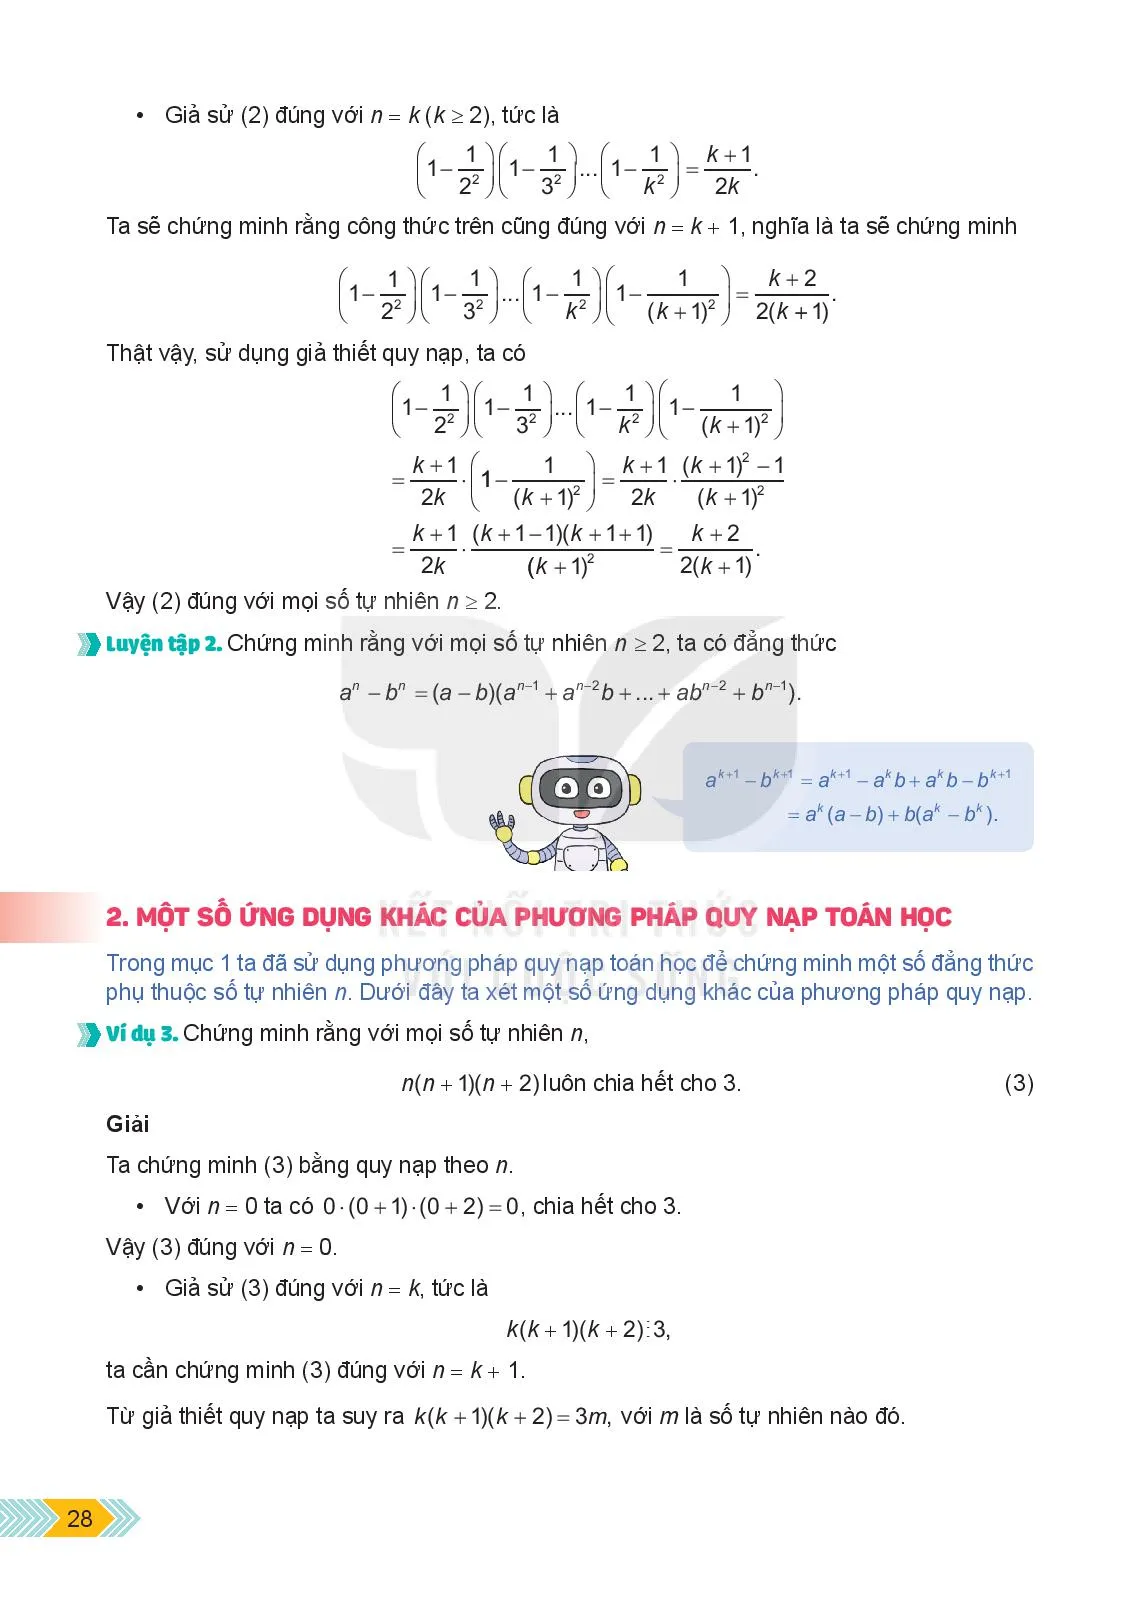 Bài 3. Phương pháp quy nạp toán học